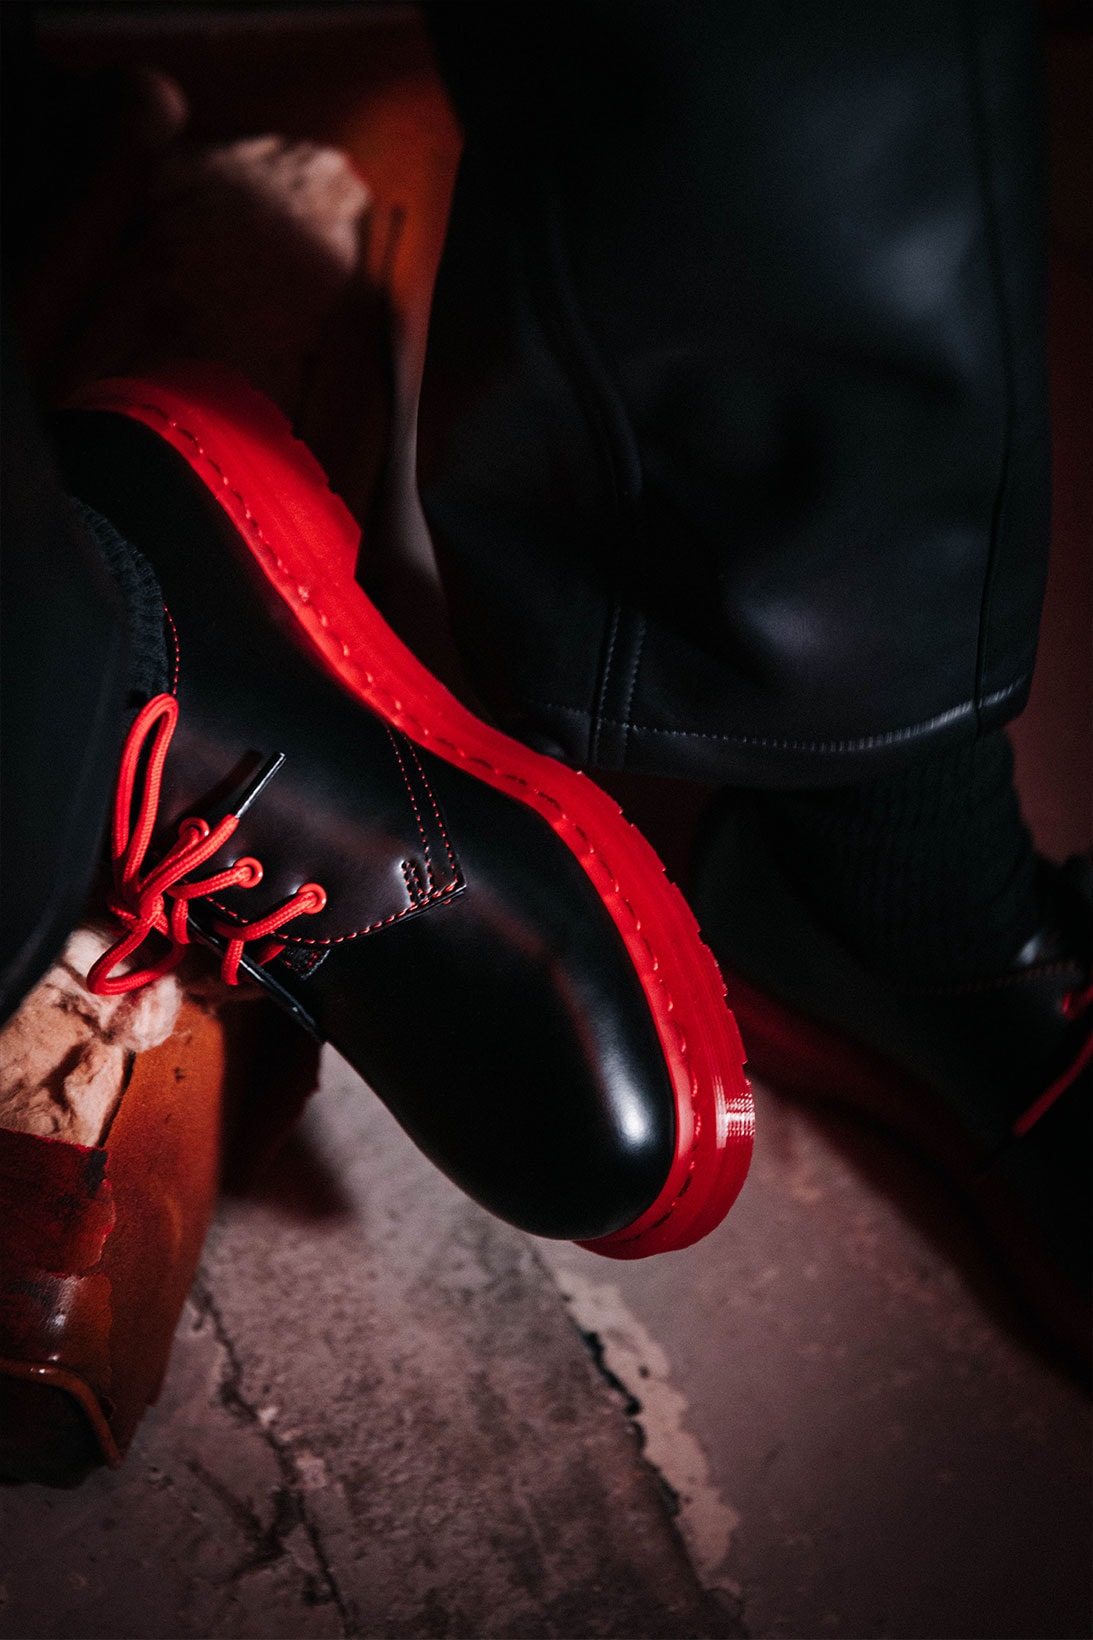 clot dr martens 1461 derby shoes collaboration black red details shoelaces